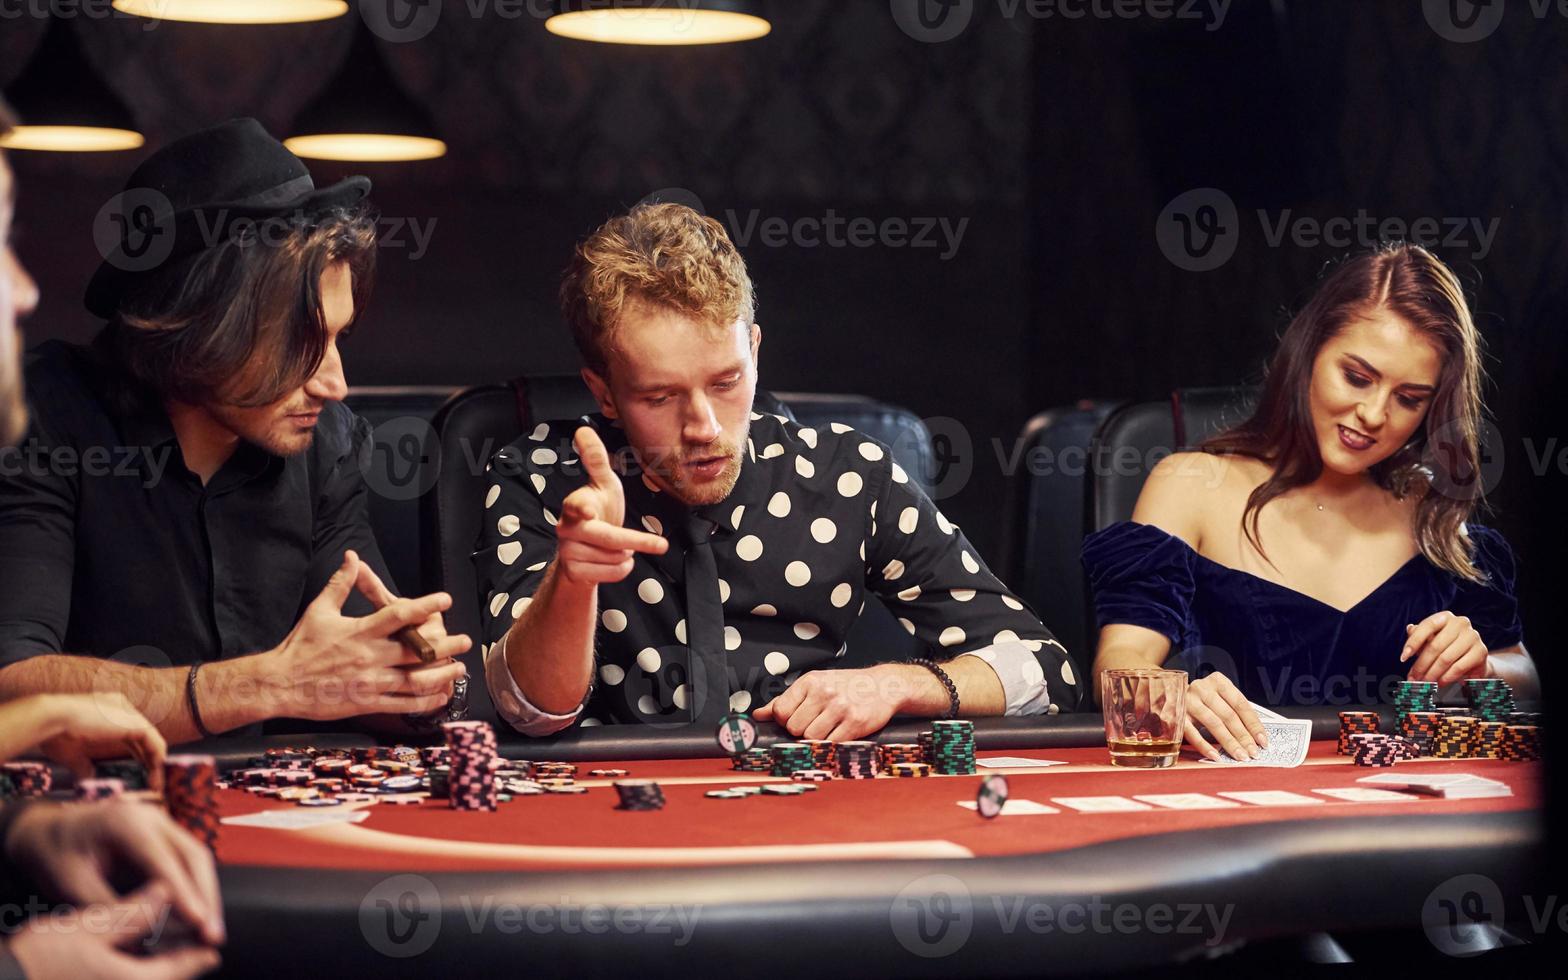 med glasögon av dryck. grupp av elegant ung människor den där spelar poker i kasino tillsammans foto